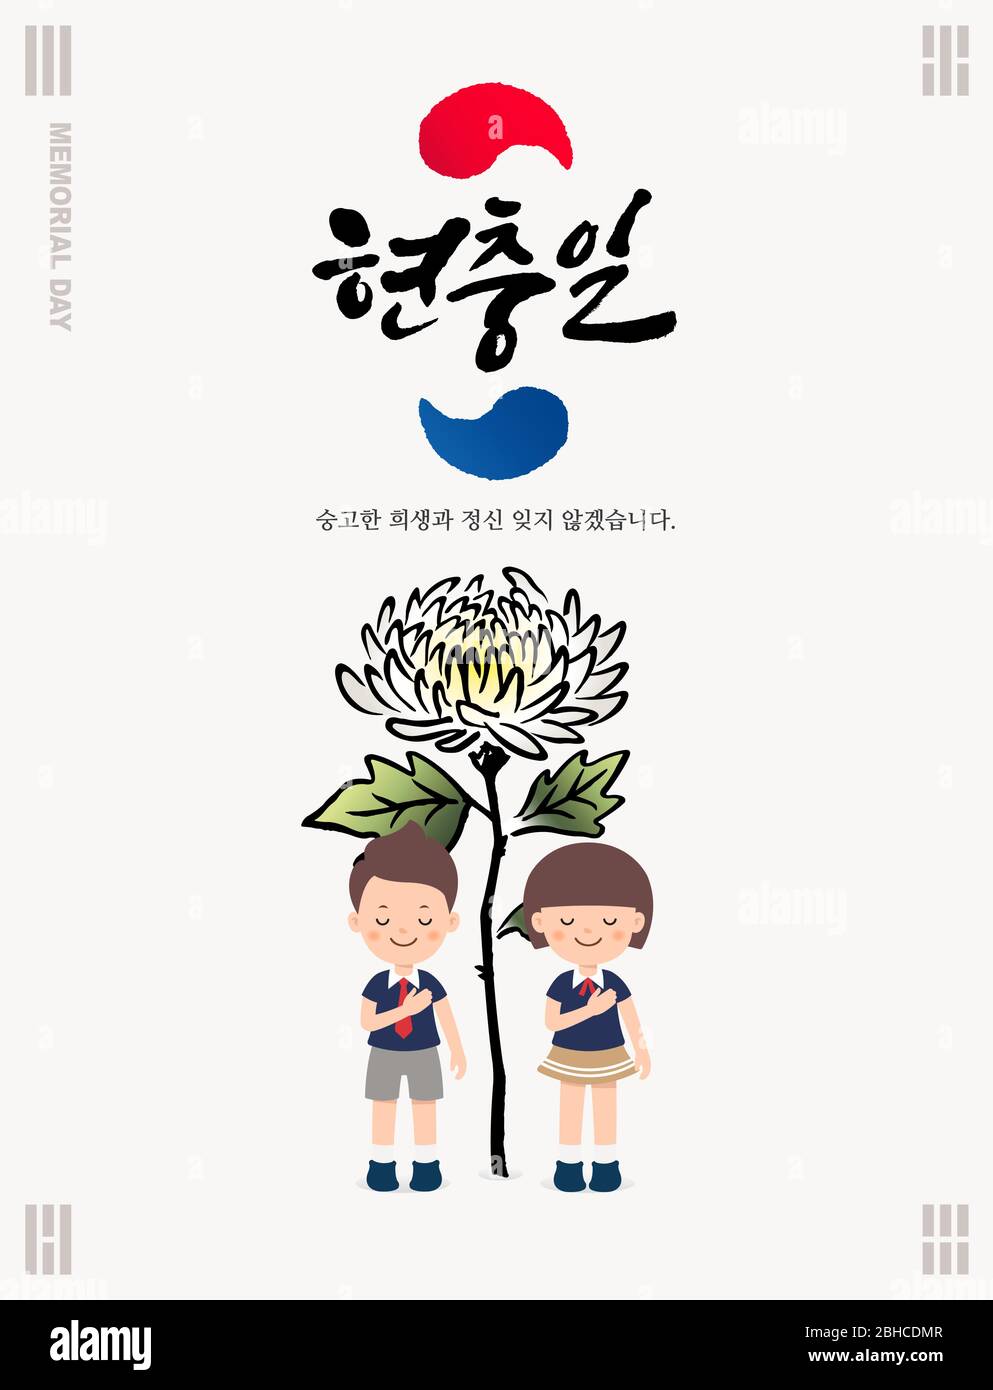 Memorial Day in Korea. Kindertrauern-Konzept-Design vor Chrysantheme Blumen. Koreanischer Gedenktag, Koreanisch Übersetzung. Stock Vektor